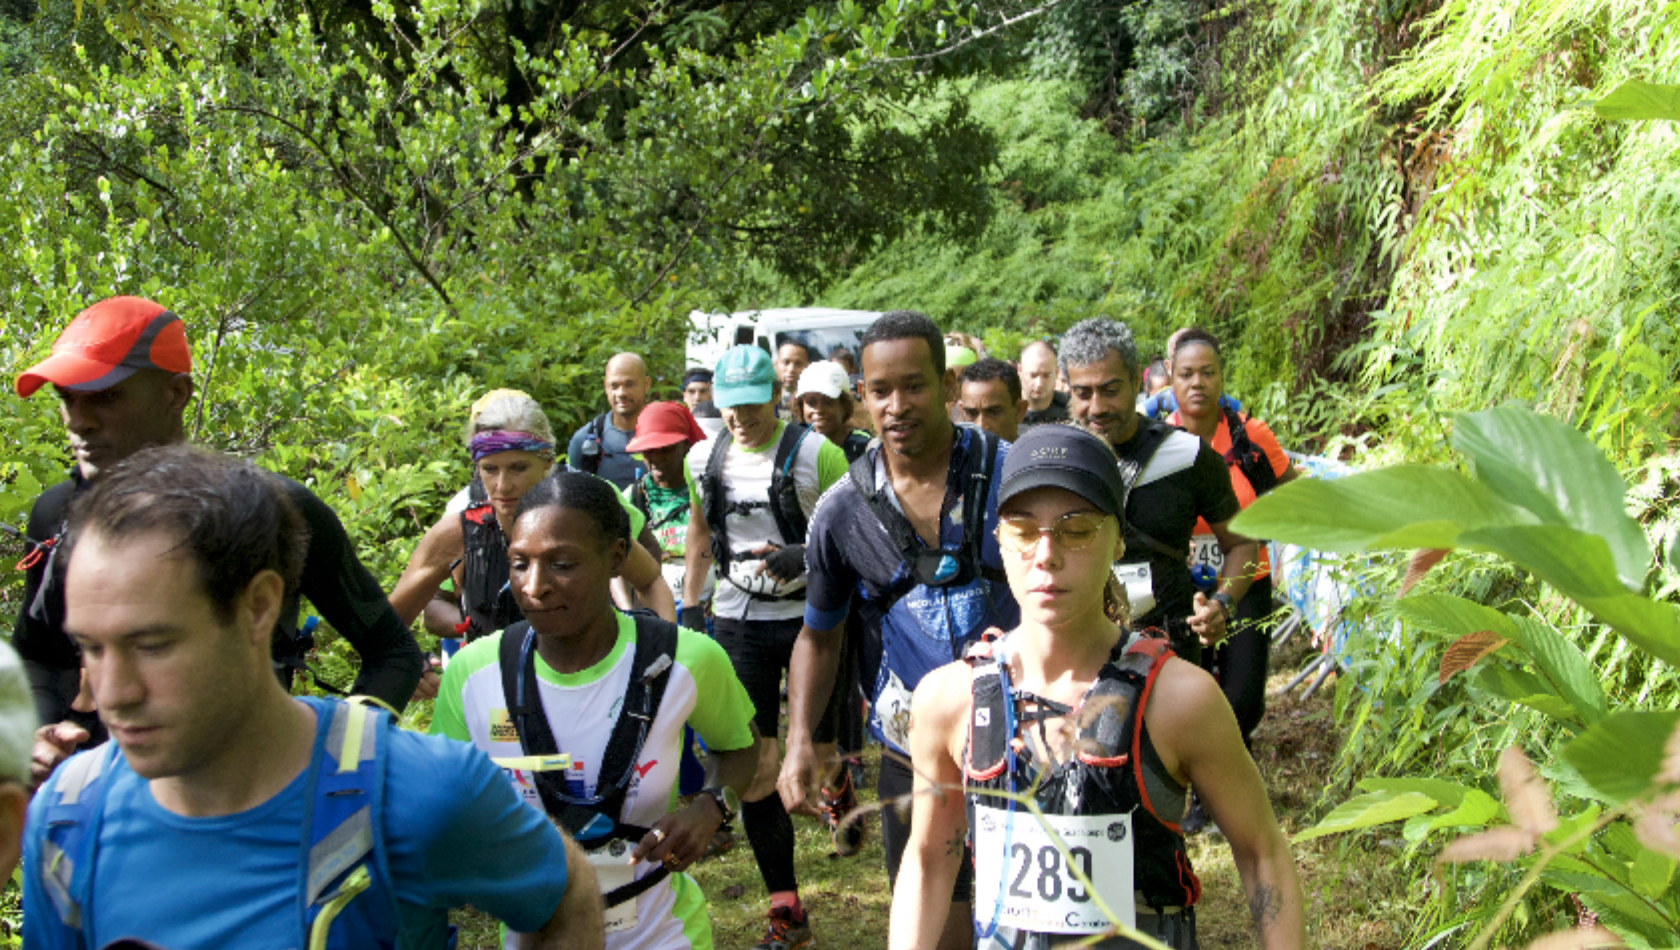     Pour ses 10 ans, l’Ultra Trace Guadeloupe innove avec une épreuve de 100 kms

